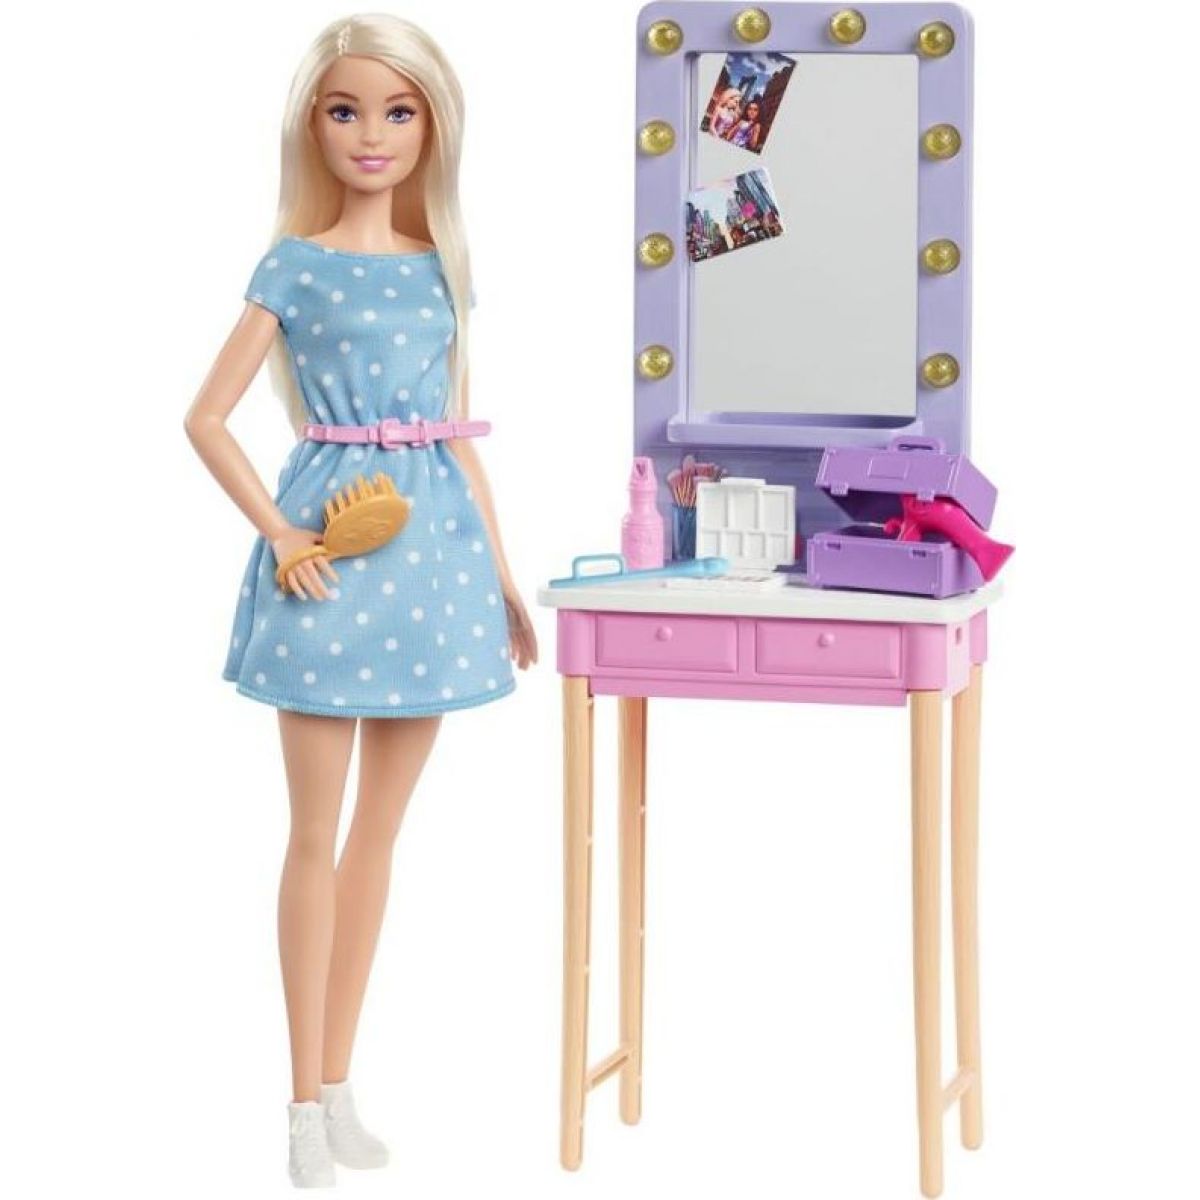 Mattel Barbie Dreamhouse herní set s panenkou asst blondýnky Malibu